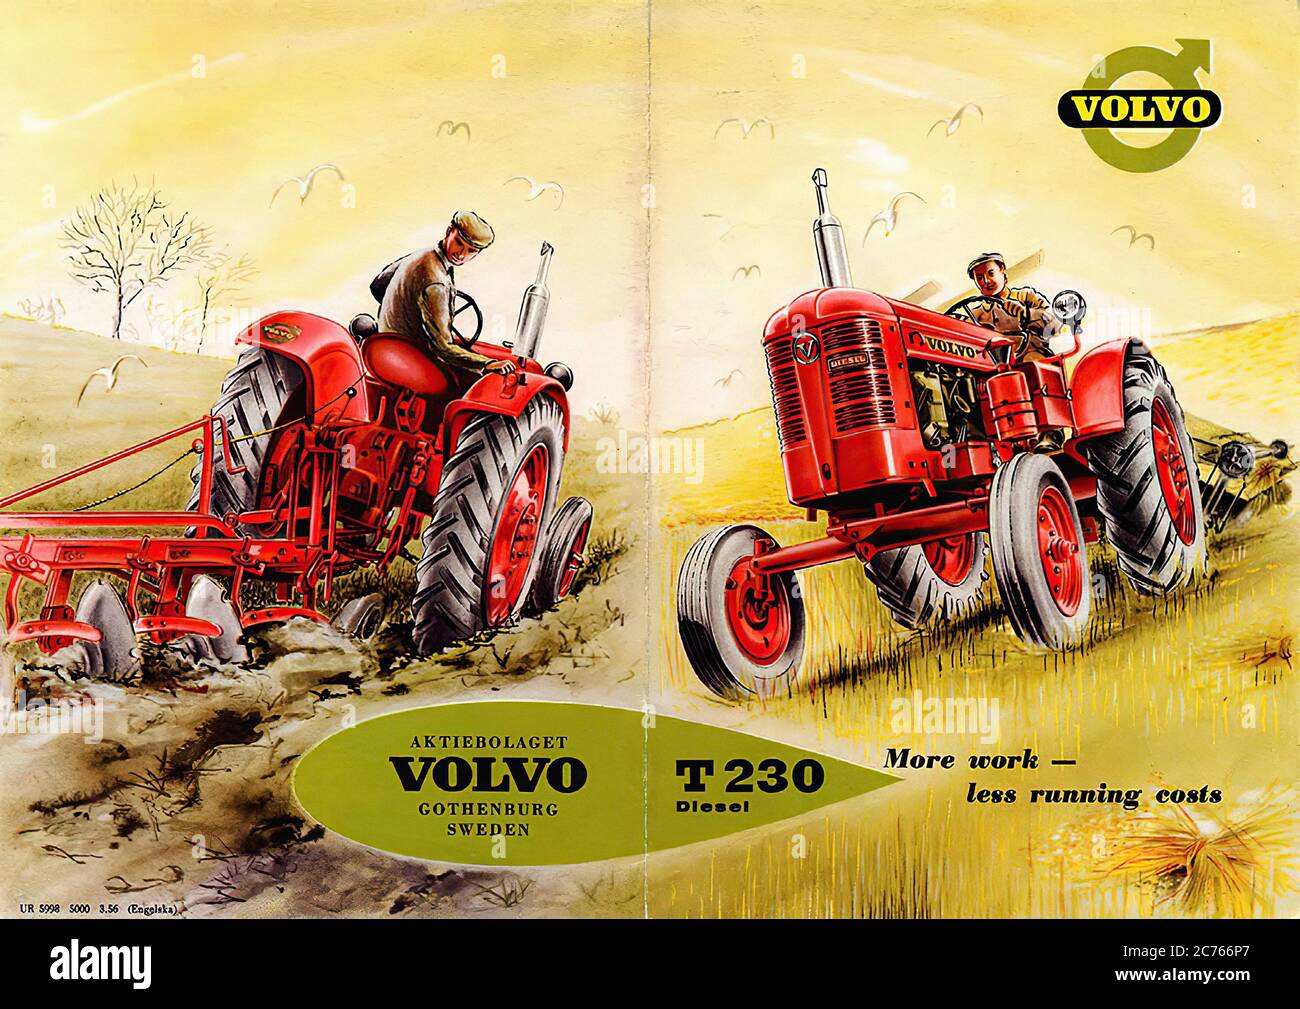 Volvo Bm T230 Traktor Reklam Av 1956 - Vintage car advertising Stock Photo